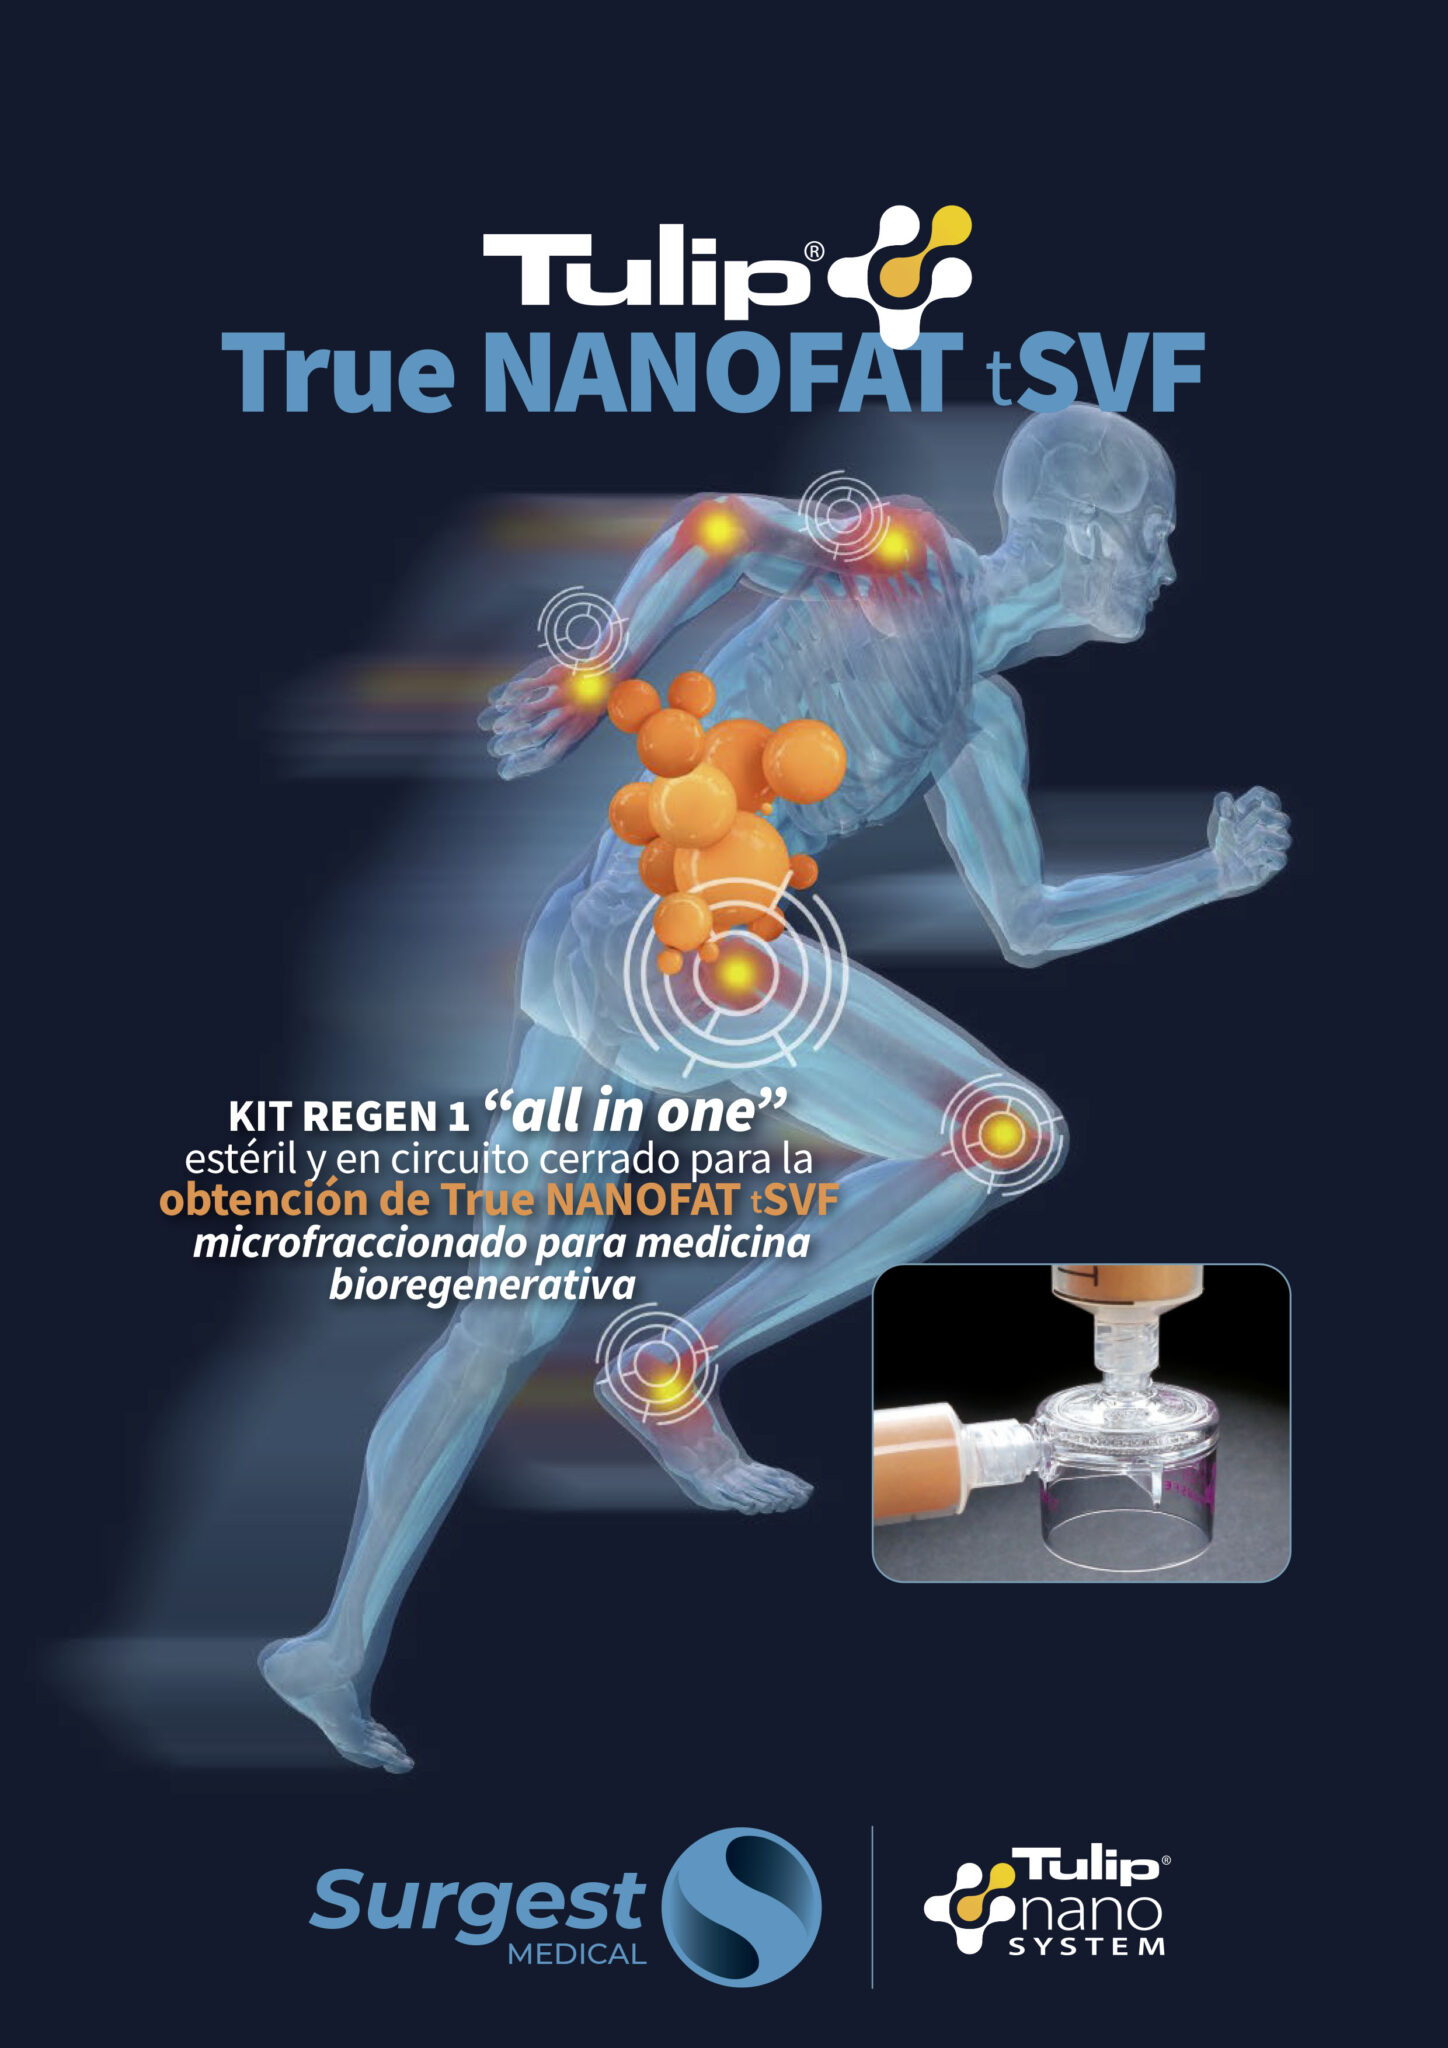 Nanofat, Bio-regeneración, traumatología